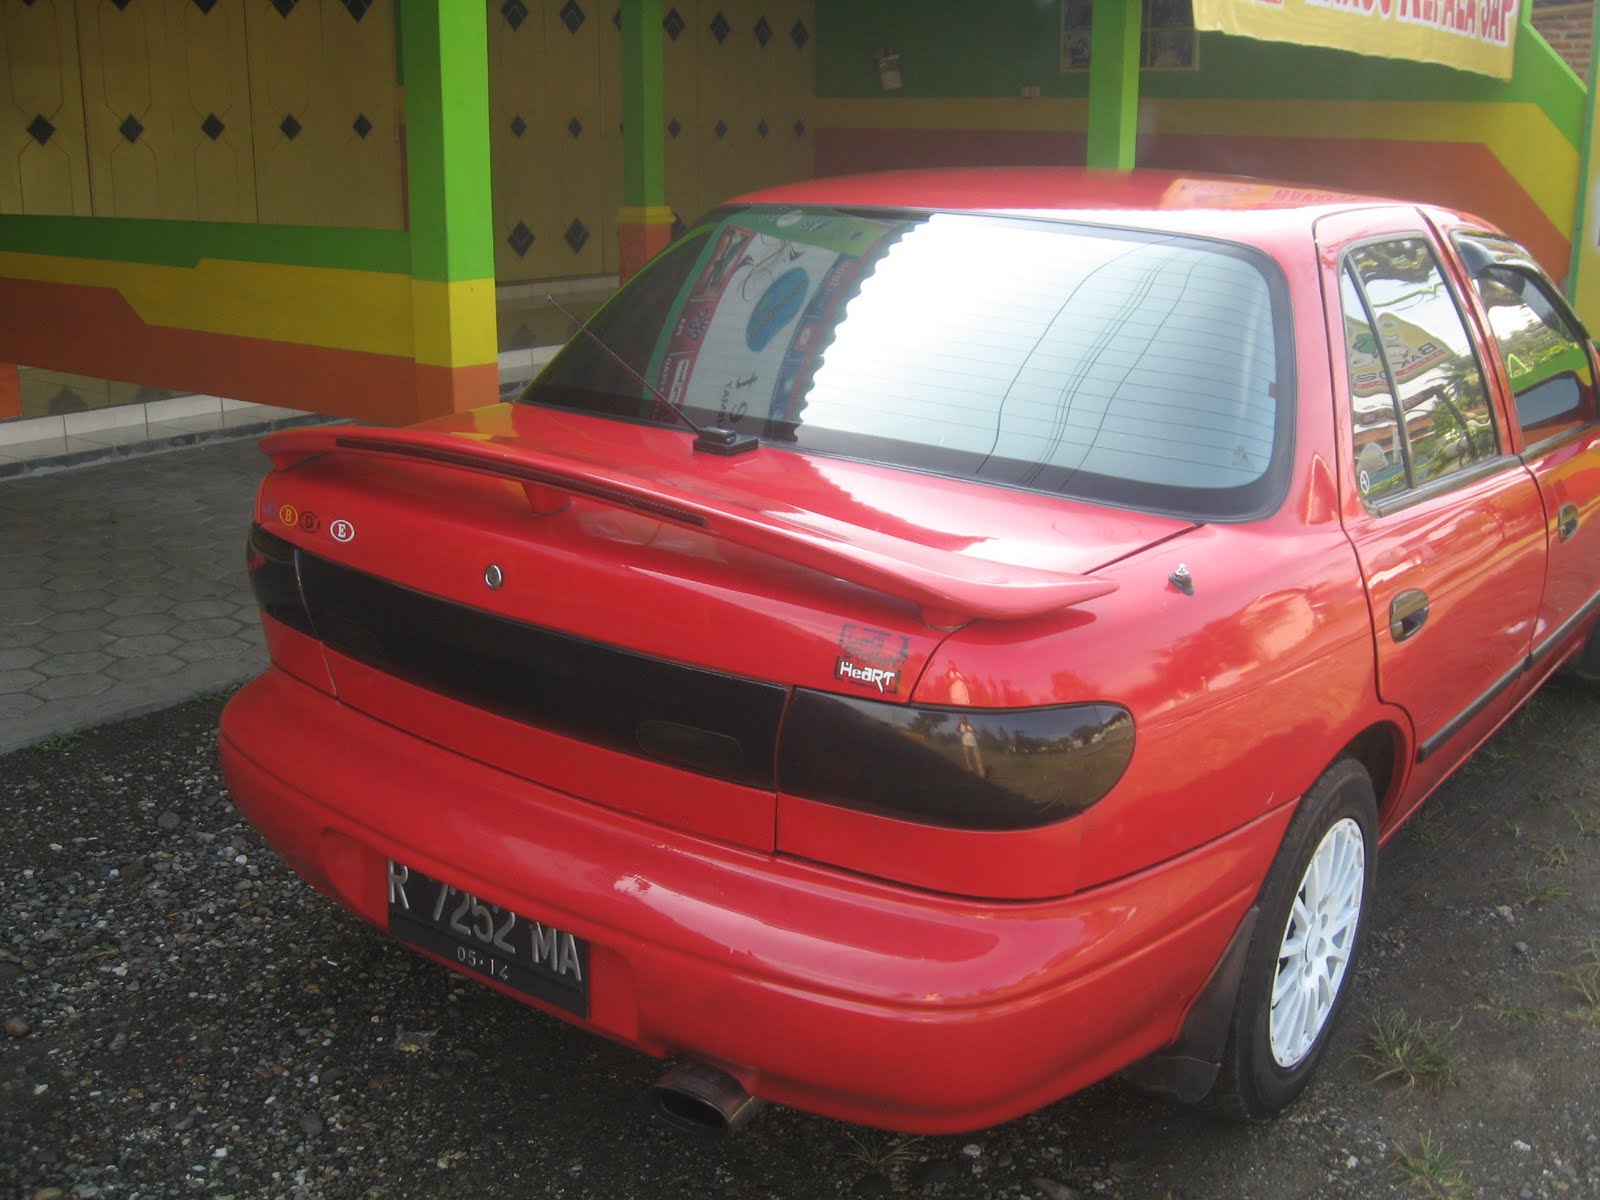 Harga Mobil Murah: Harga Murah Mobil Bekas Timor